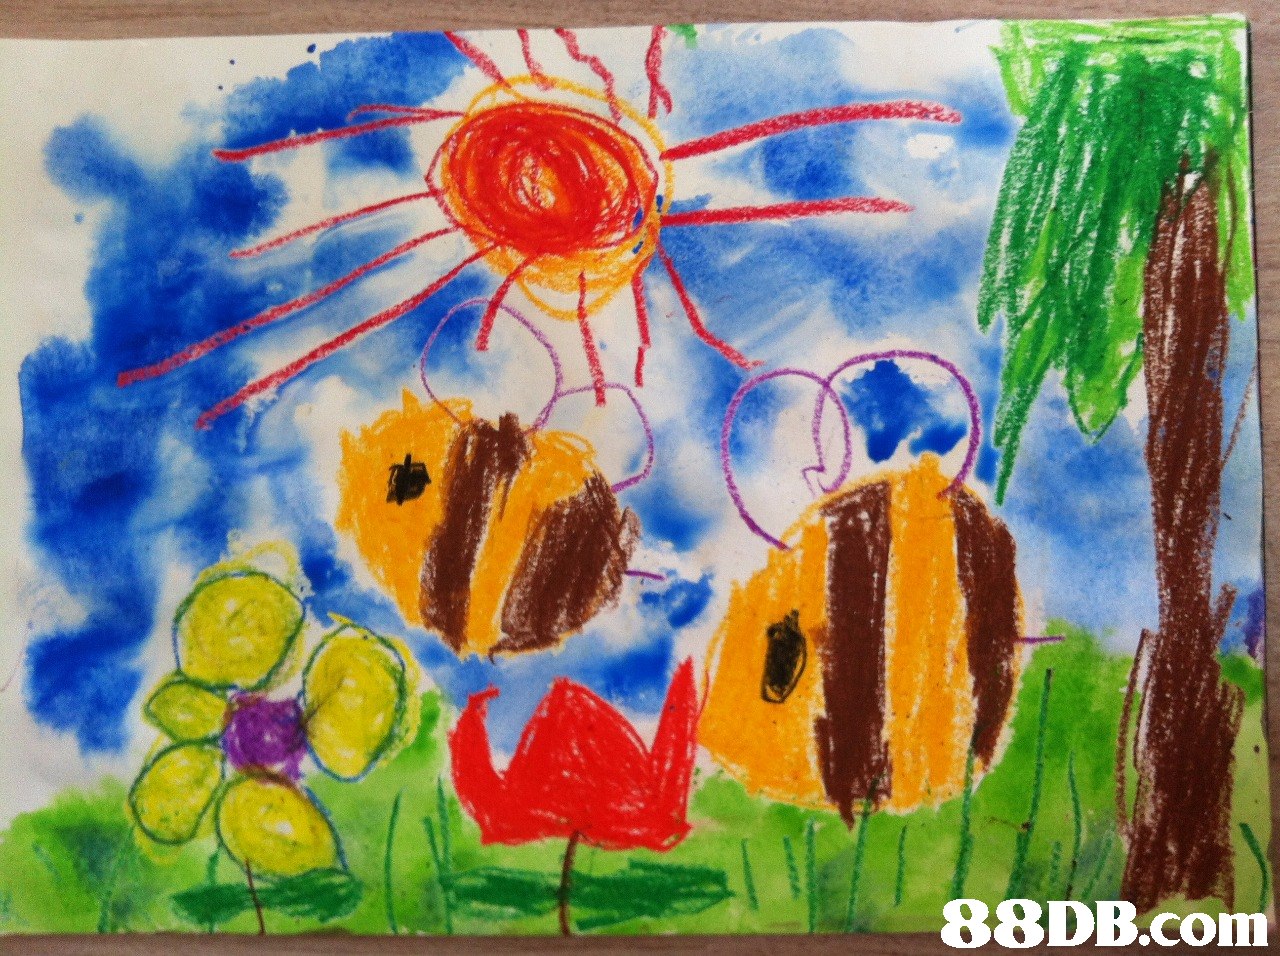   painting,child art,art,flower,watercolor paint